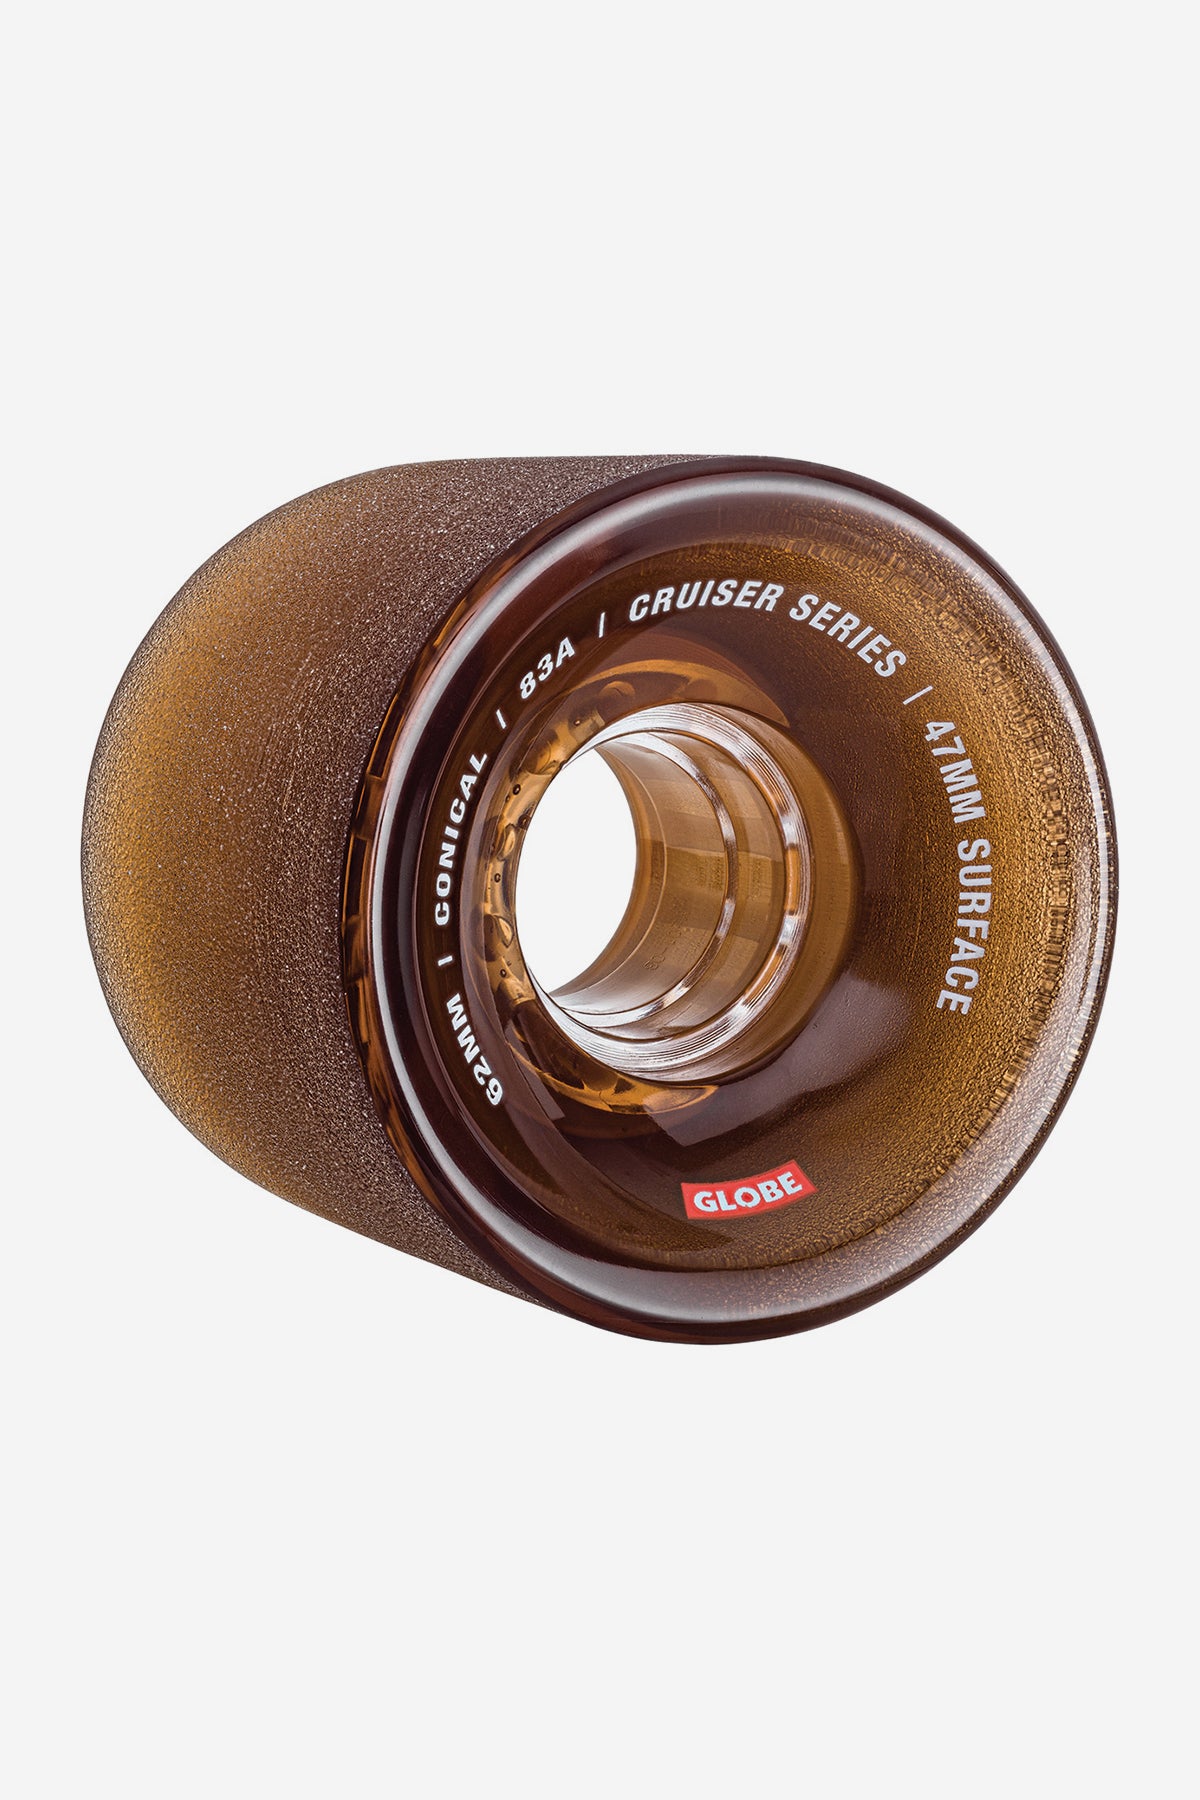 Conical Cruiser Wheel 62mm 4 Pack - Globe Brand AU